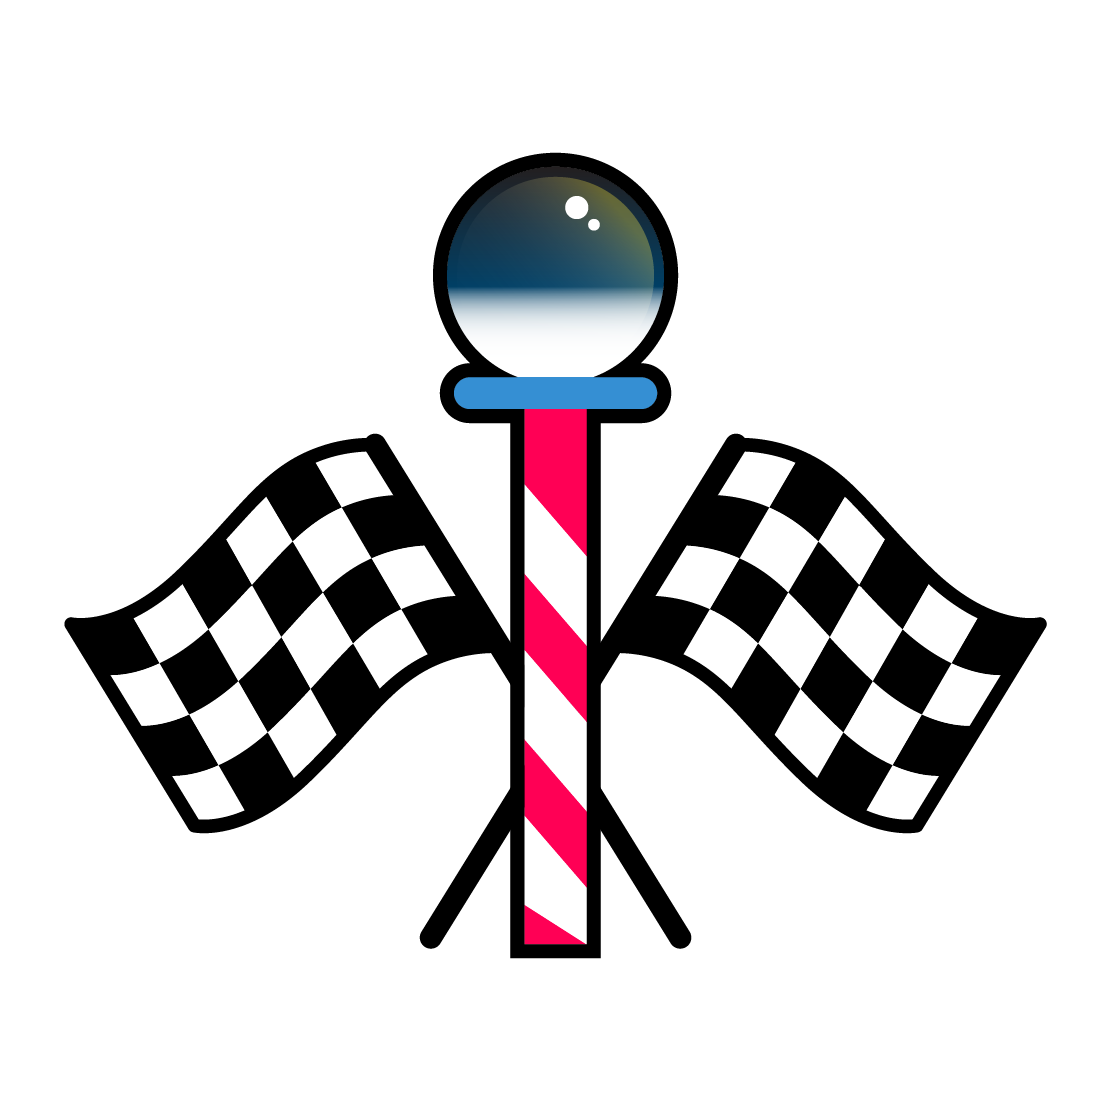 pole indicating south pole, finish point flag